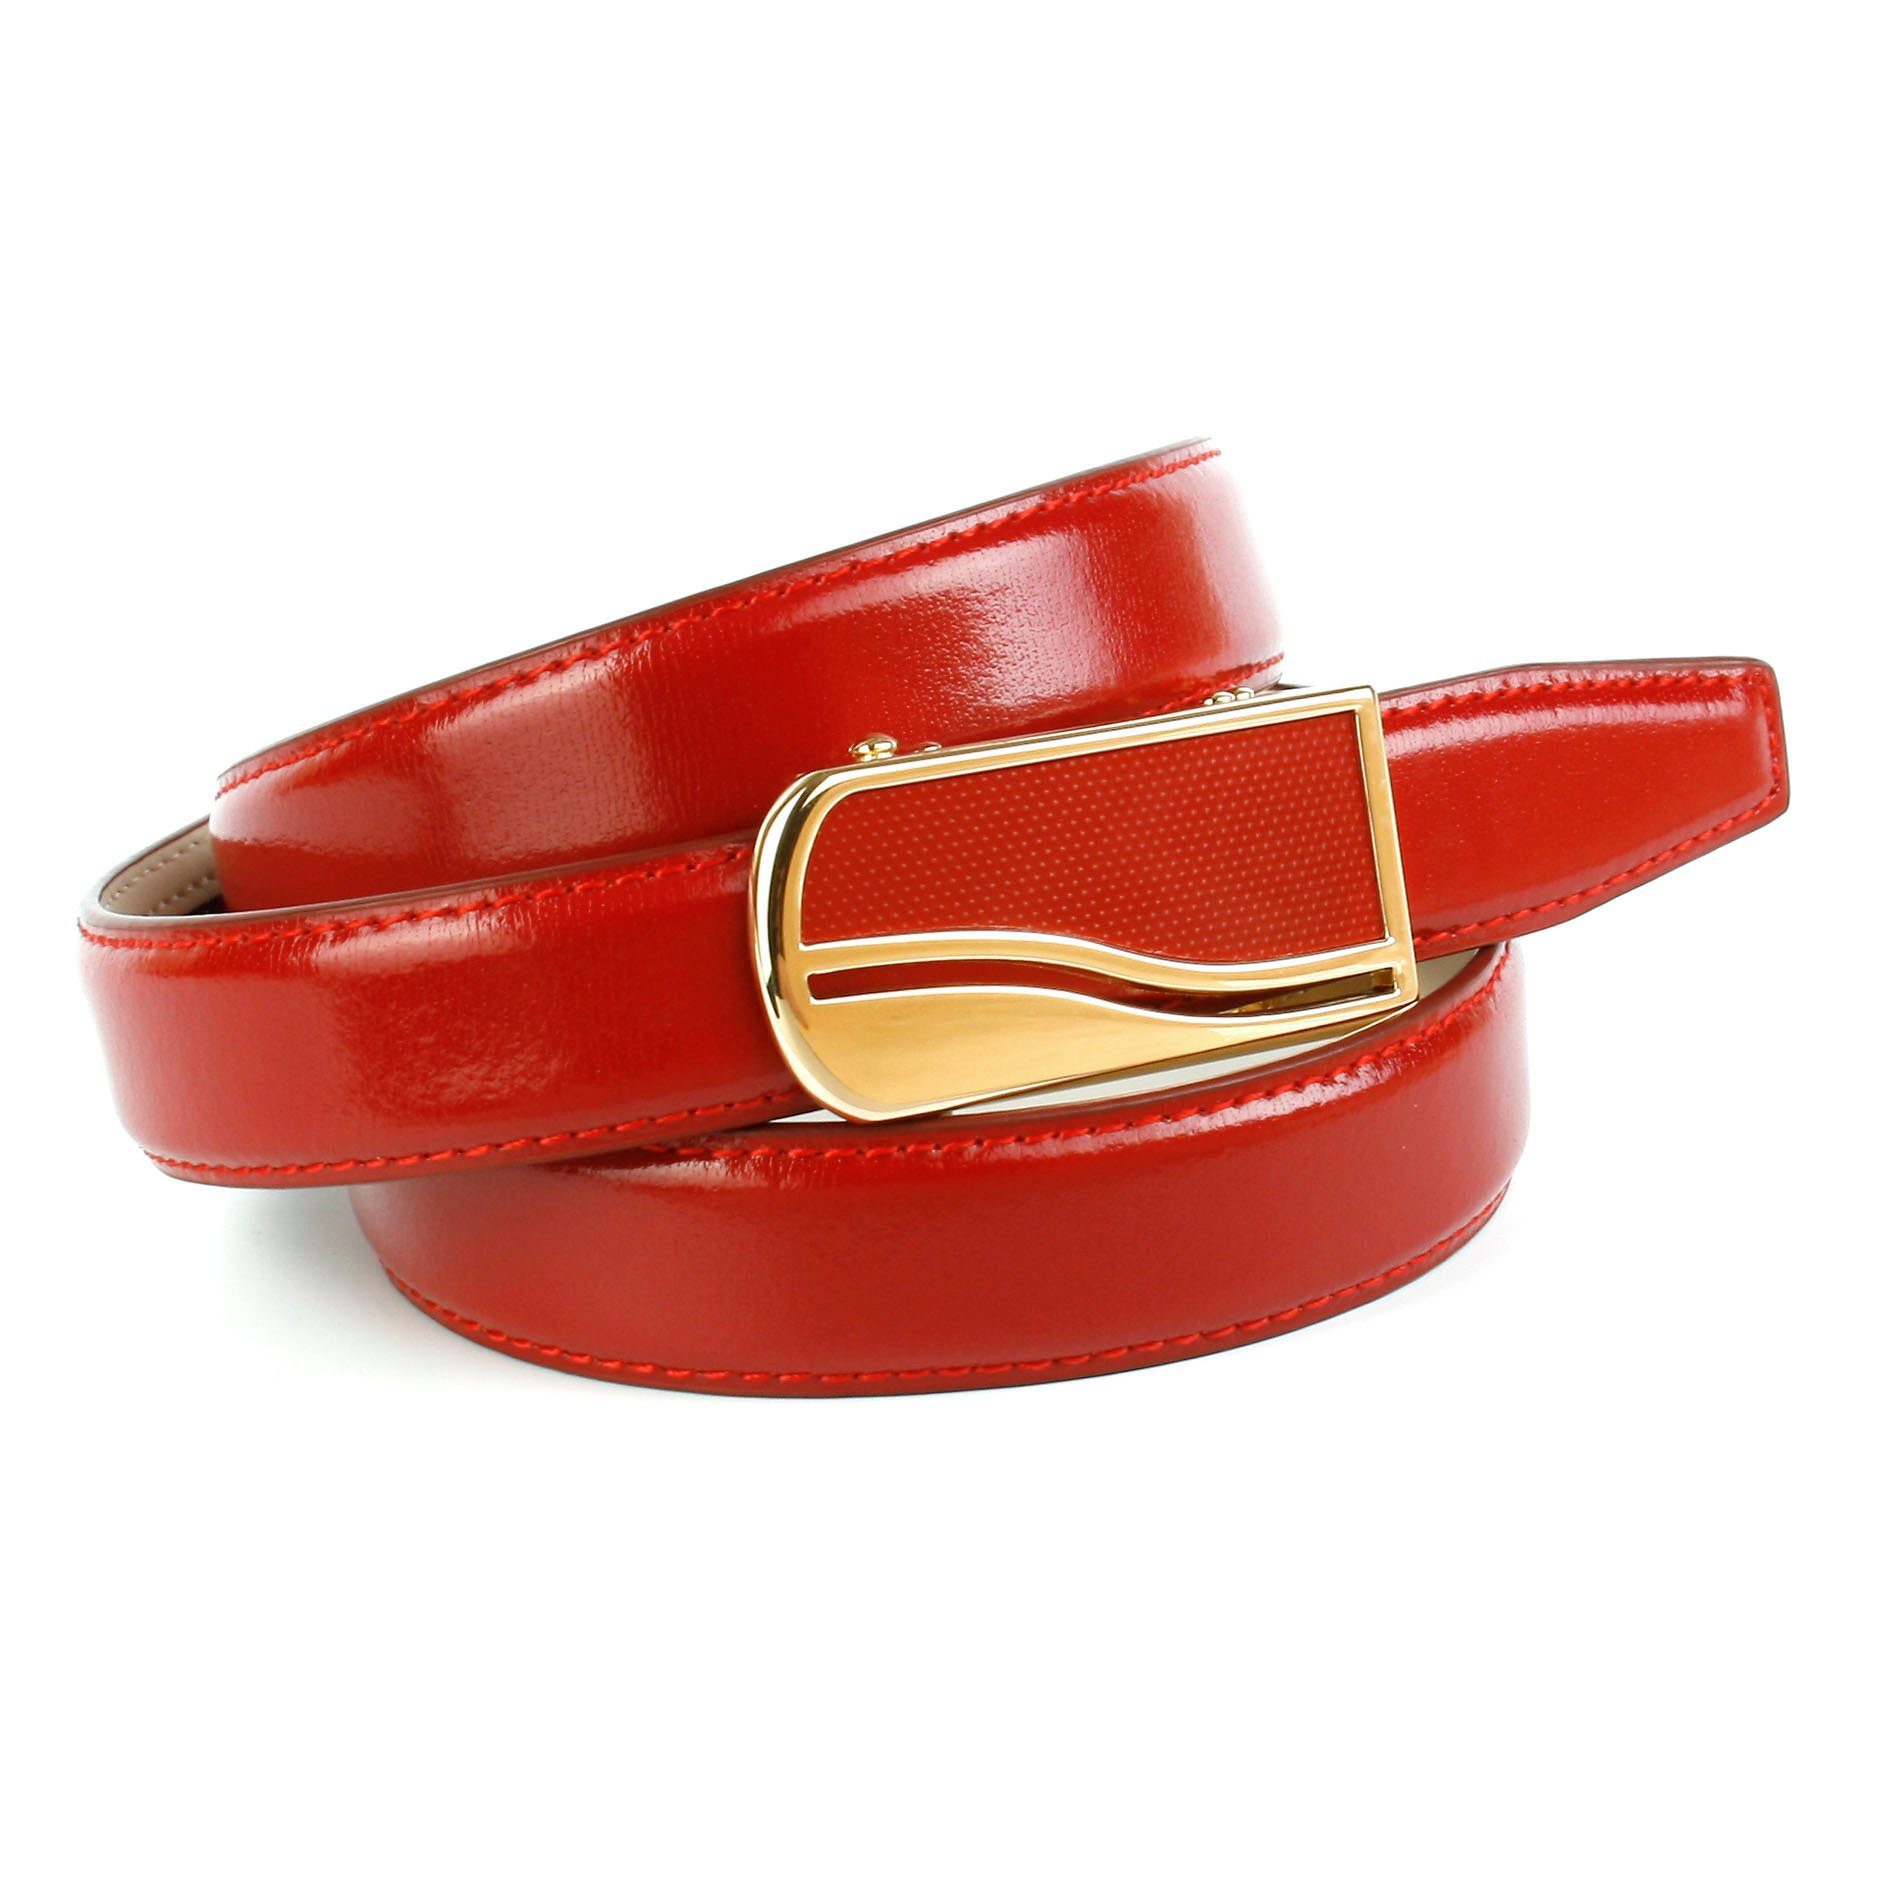 Anthoni Crown Ledergürtel 2,4 cm Ledergürtel in rot femininer